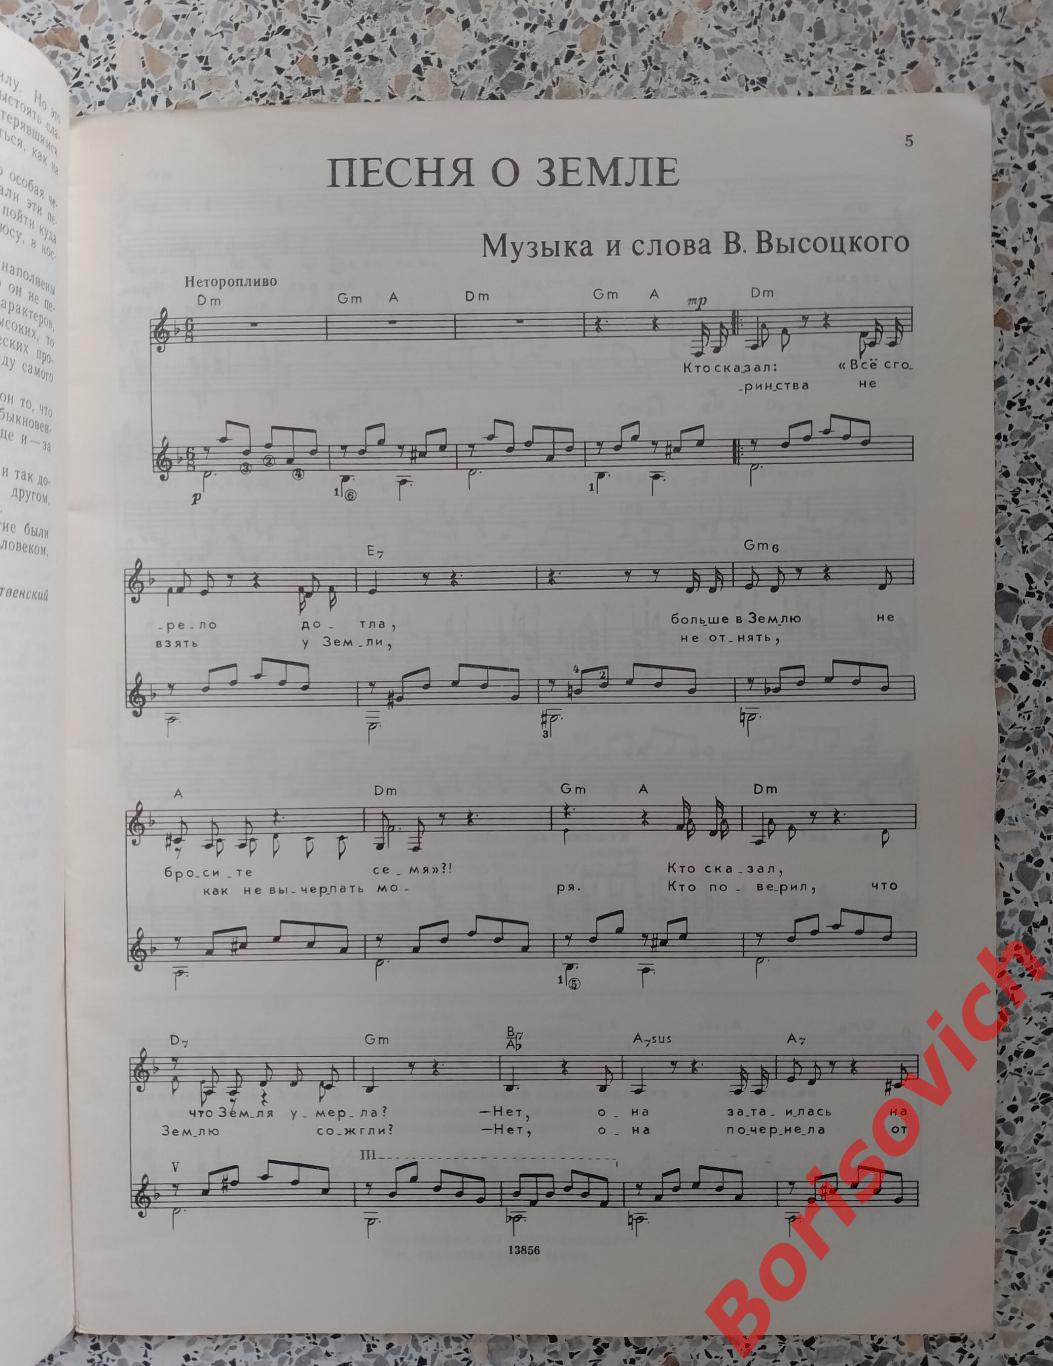 ПОЁТ ВЛАДИМИР ВЫСОЦКИЙ Песни для голоса в сопровождении гитары 1989 г 64 стр. 35 1